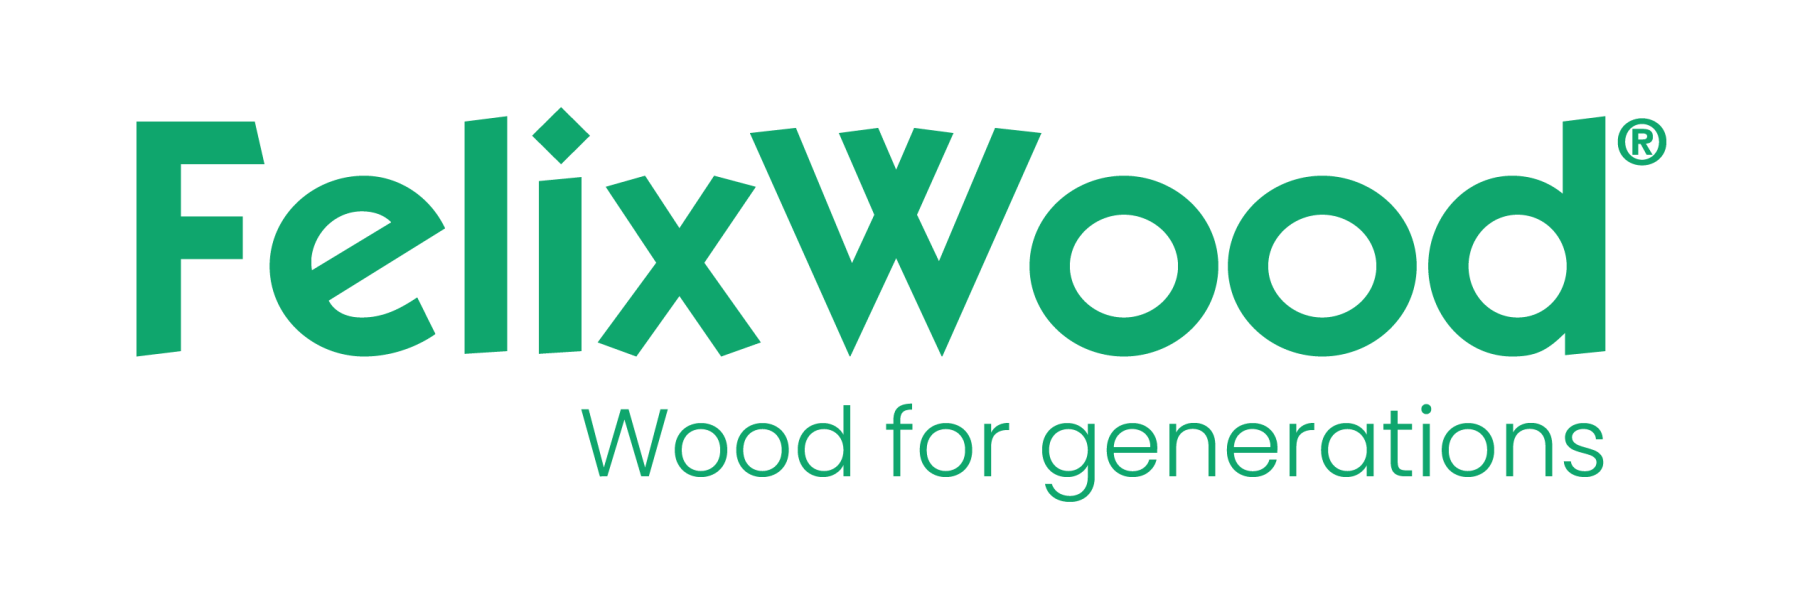 Logo Felixwood